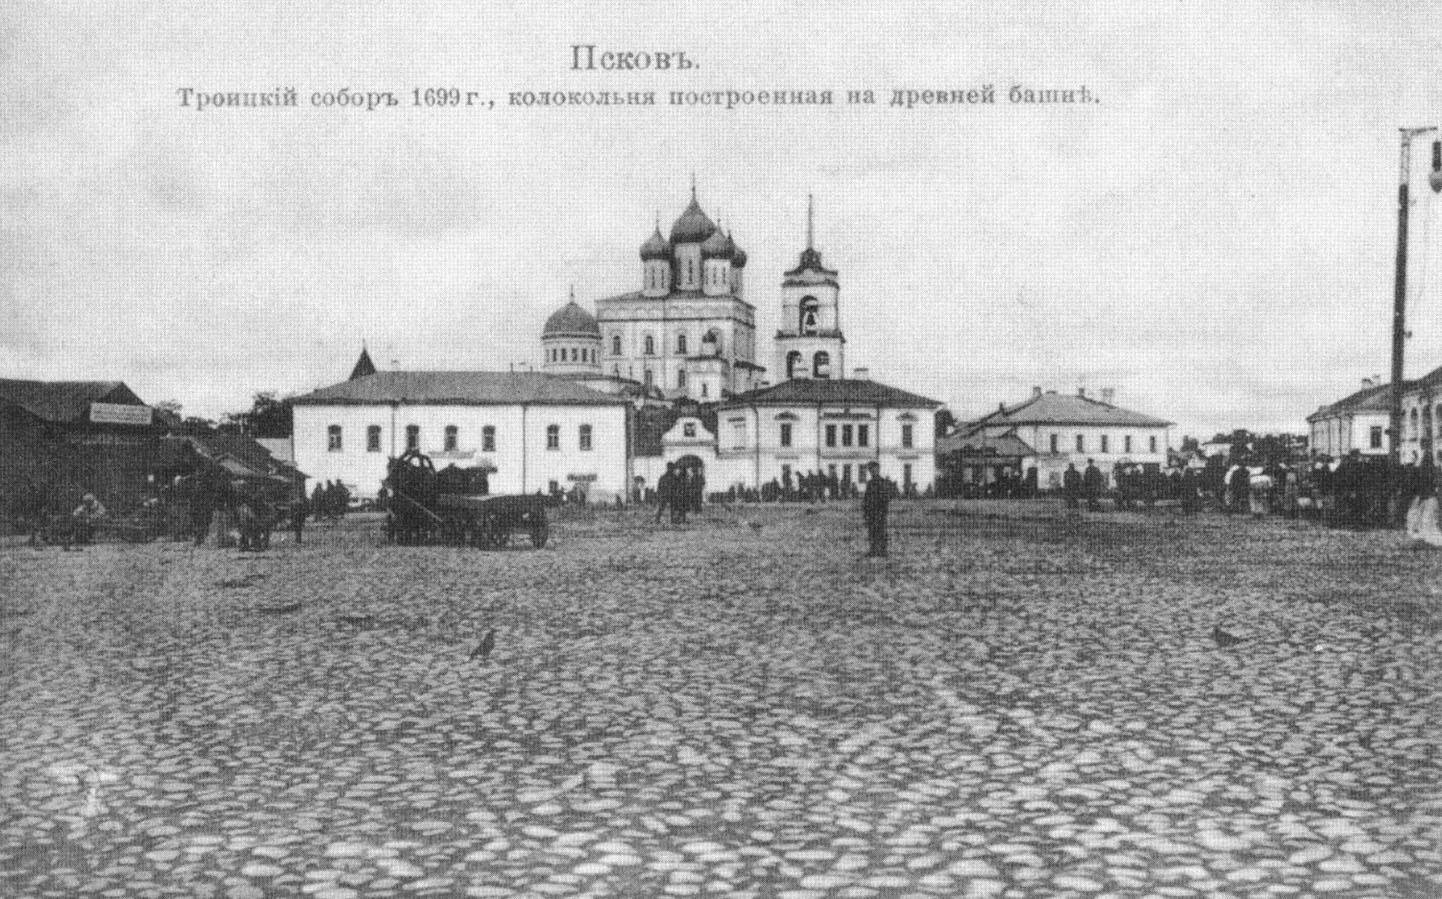 Псков. Троицкий собо 1699 г., колокольня, построенная на древней башне.